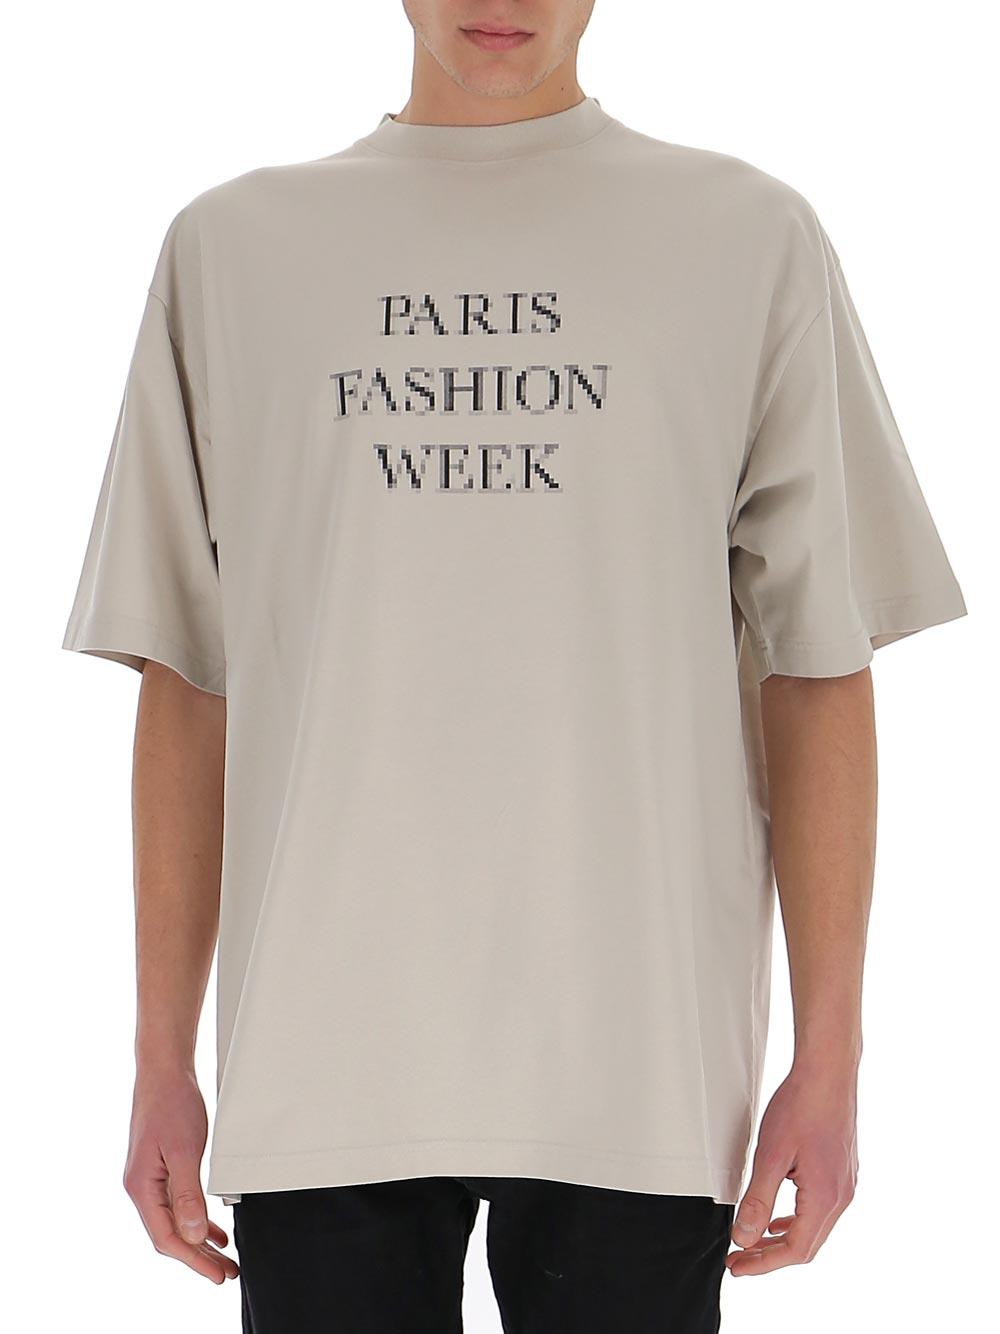 BALENCIAGA PARIS FASHION WEEK Tシャツ